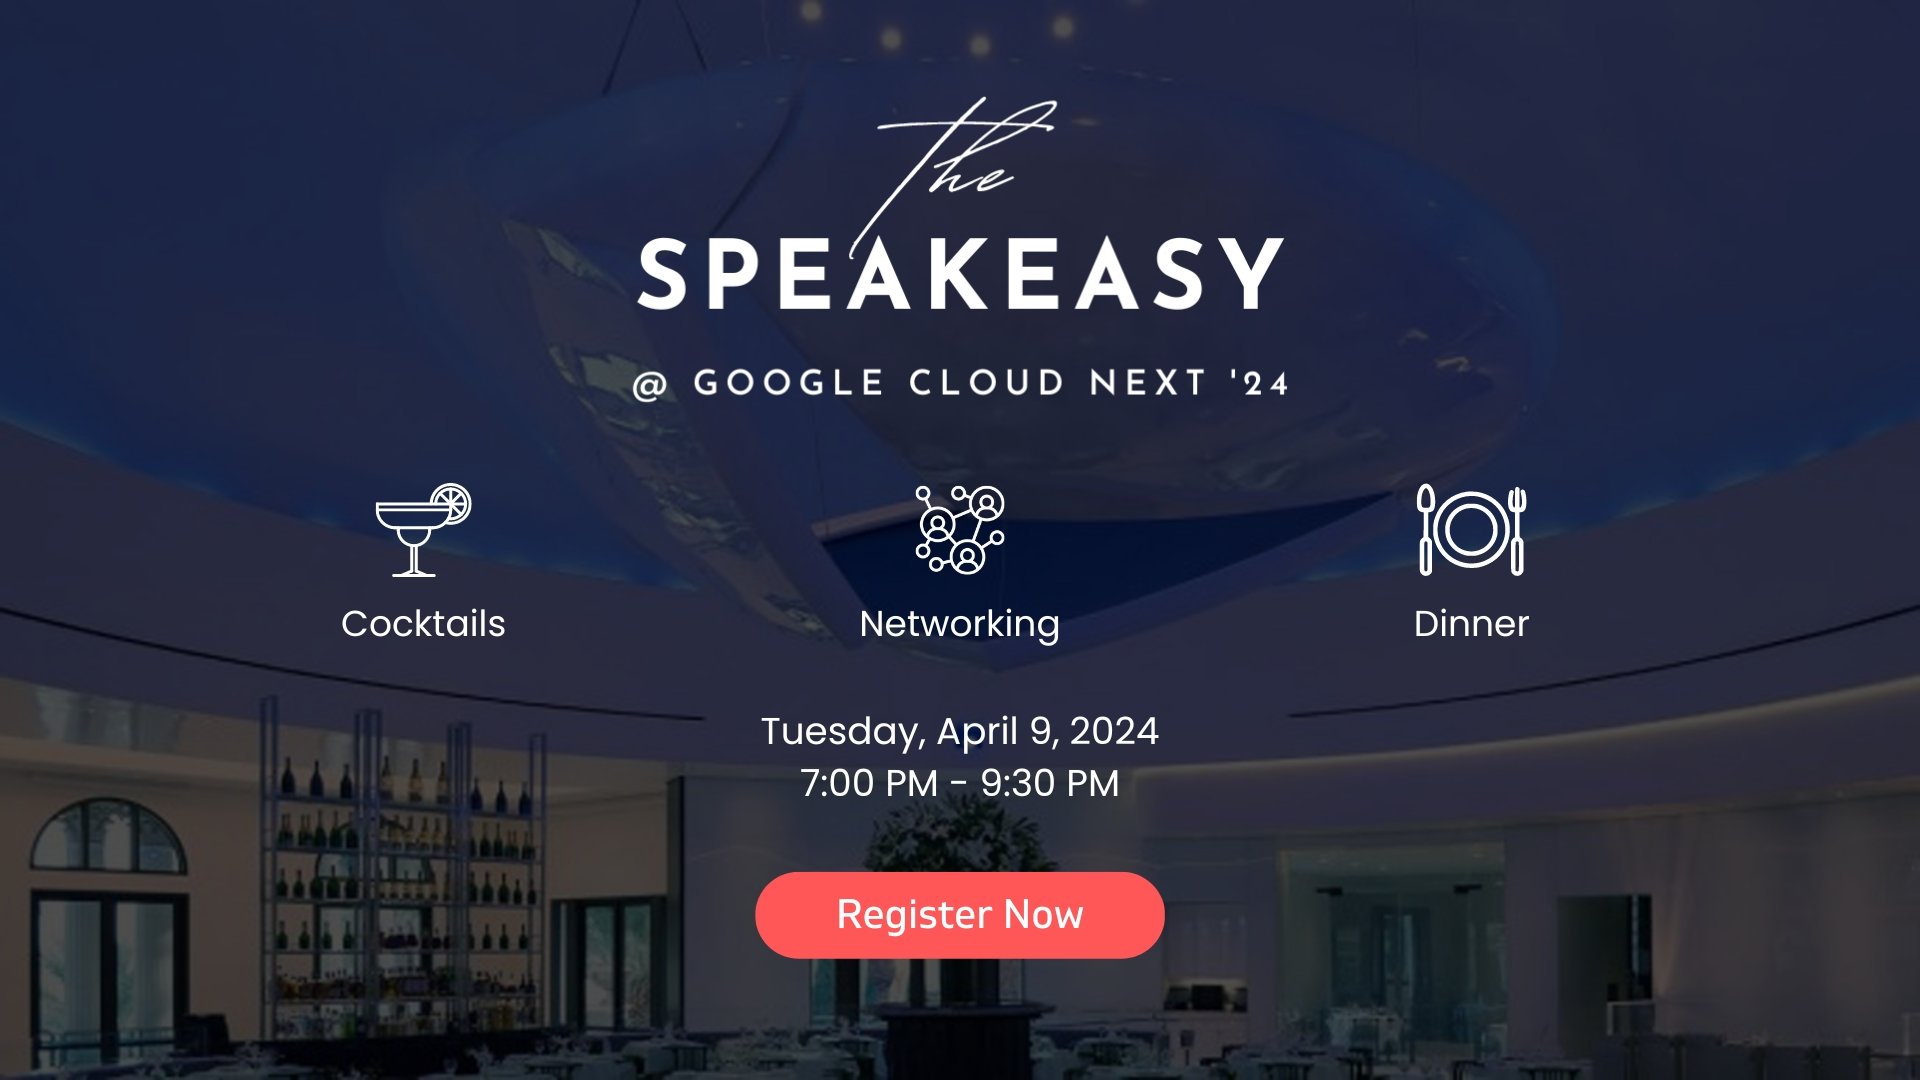 Speakeasy at Google Cloud Next